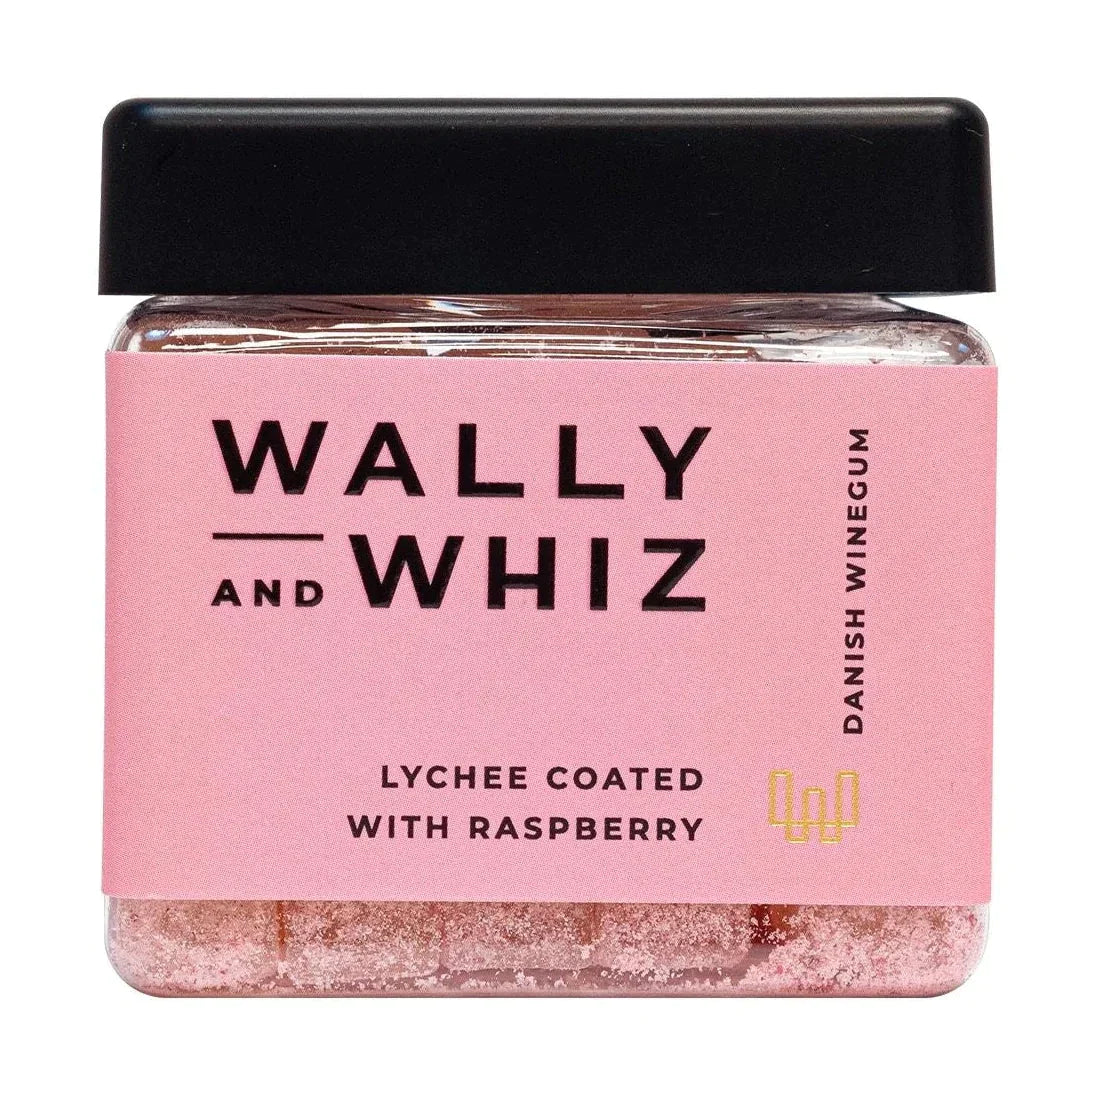 Cube de gomme de vin Wally et Whiz, litchi avec framboise, 140g